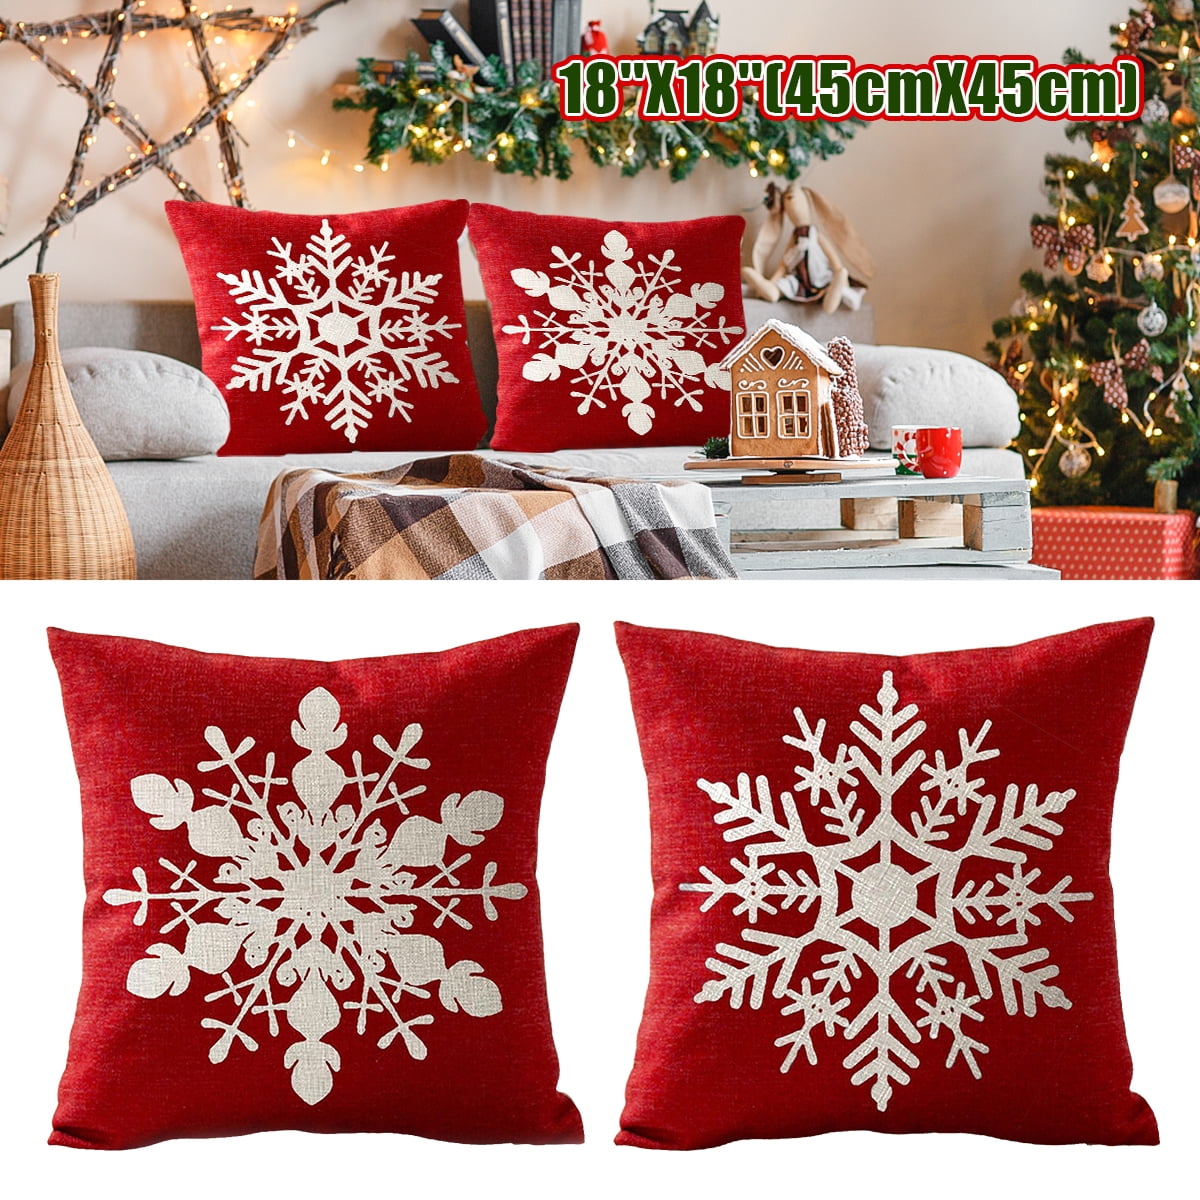 18" Christmas Pillow Cases Cotton Linen Sofa Throw Cushion Cover Home Decor Xmas 